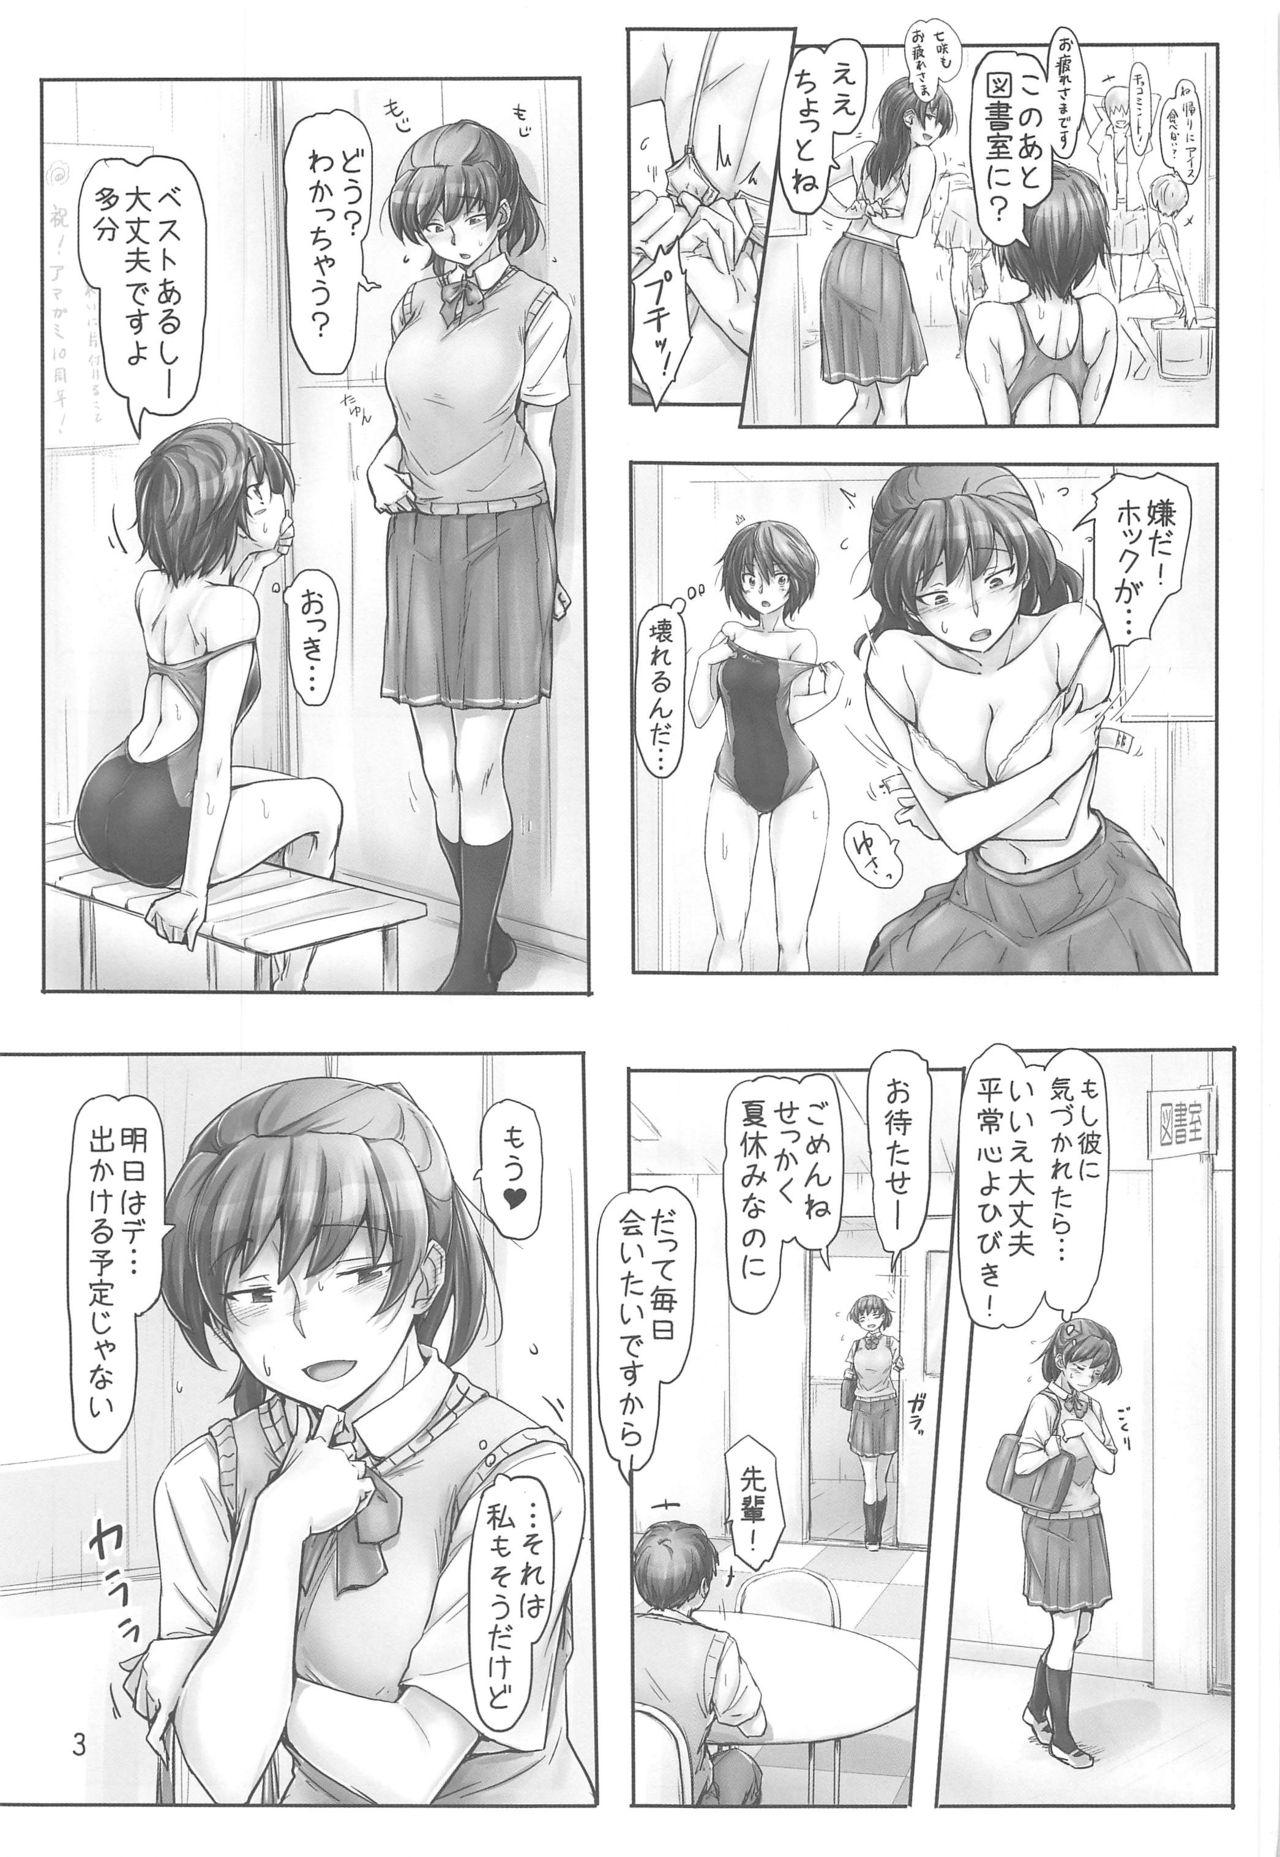 Vagina Shinpai Shita Kare ga Ie made Okutte Kurete Ureshikatta kara Date de Chotto Daitan na Hibiki-san - Amagami Lips - Page 2